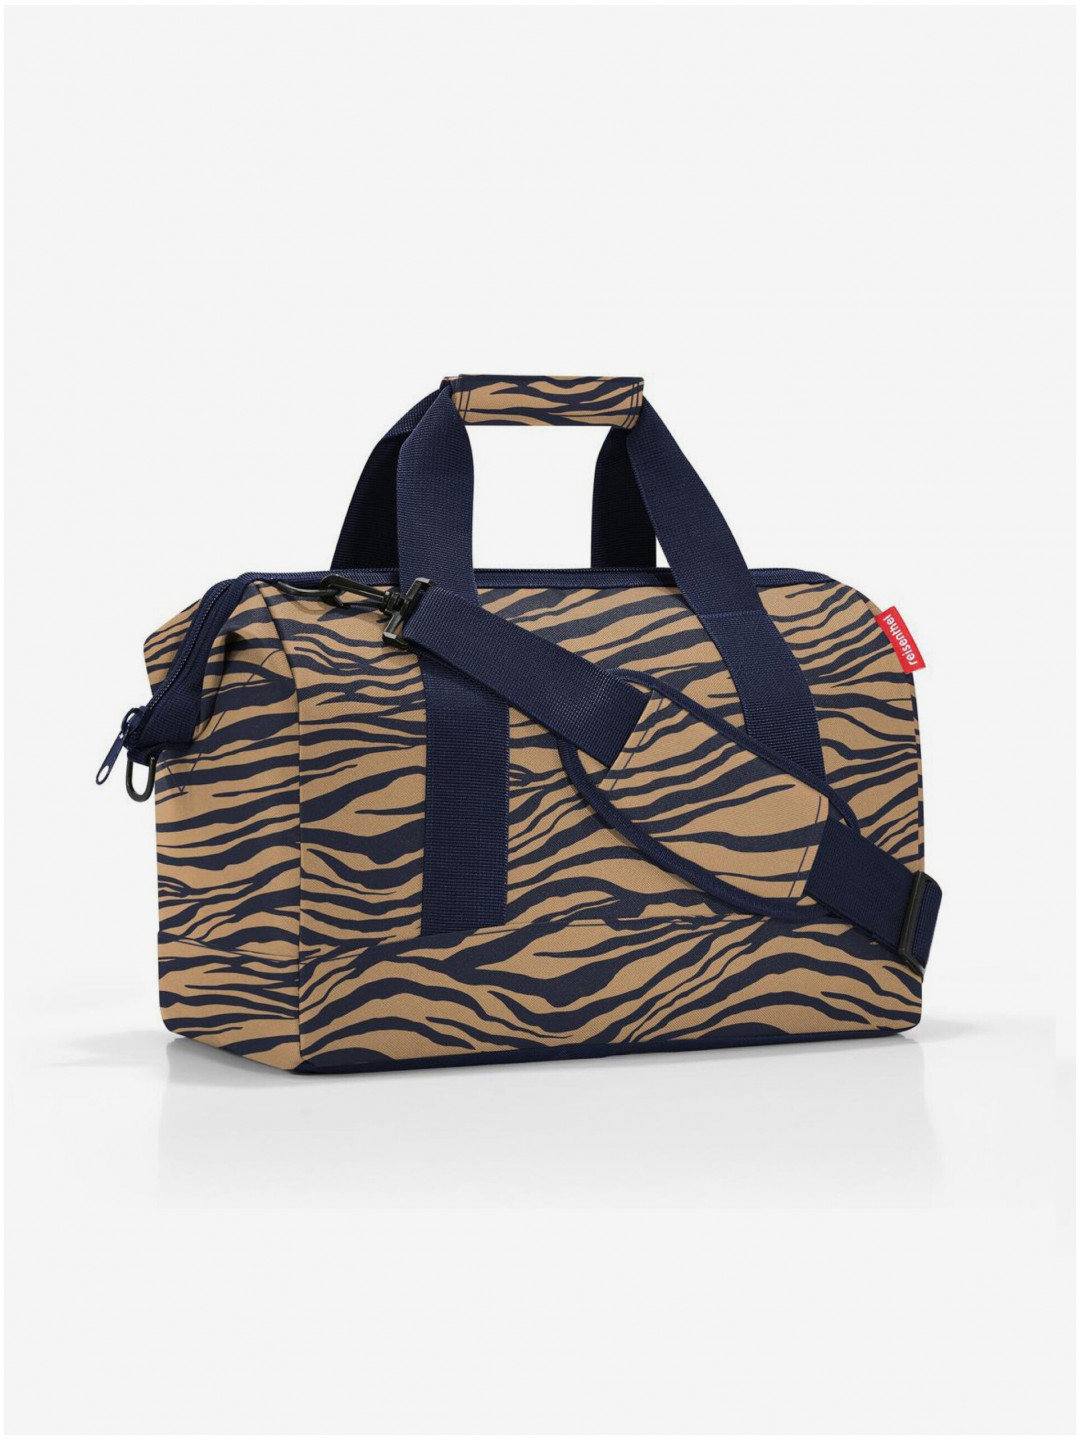 Modro-hnědá dámská cestovní taška se zvířecím vzorem Reisenthel Allrounder M Sumatra